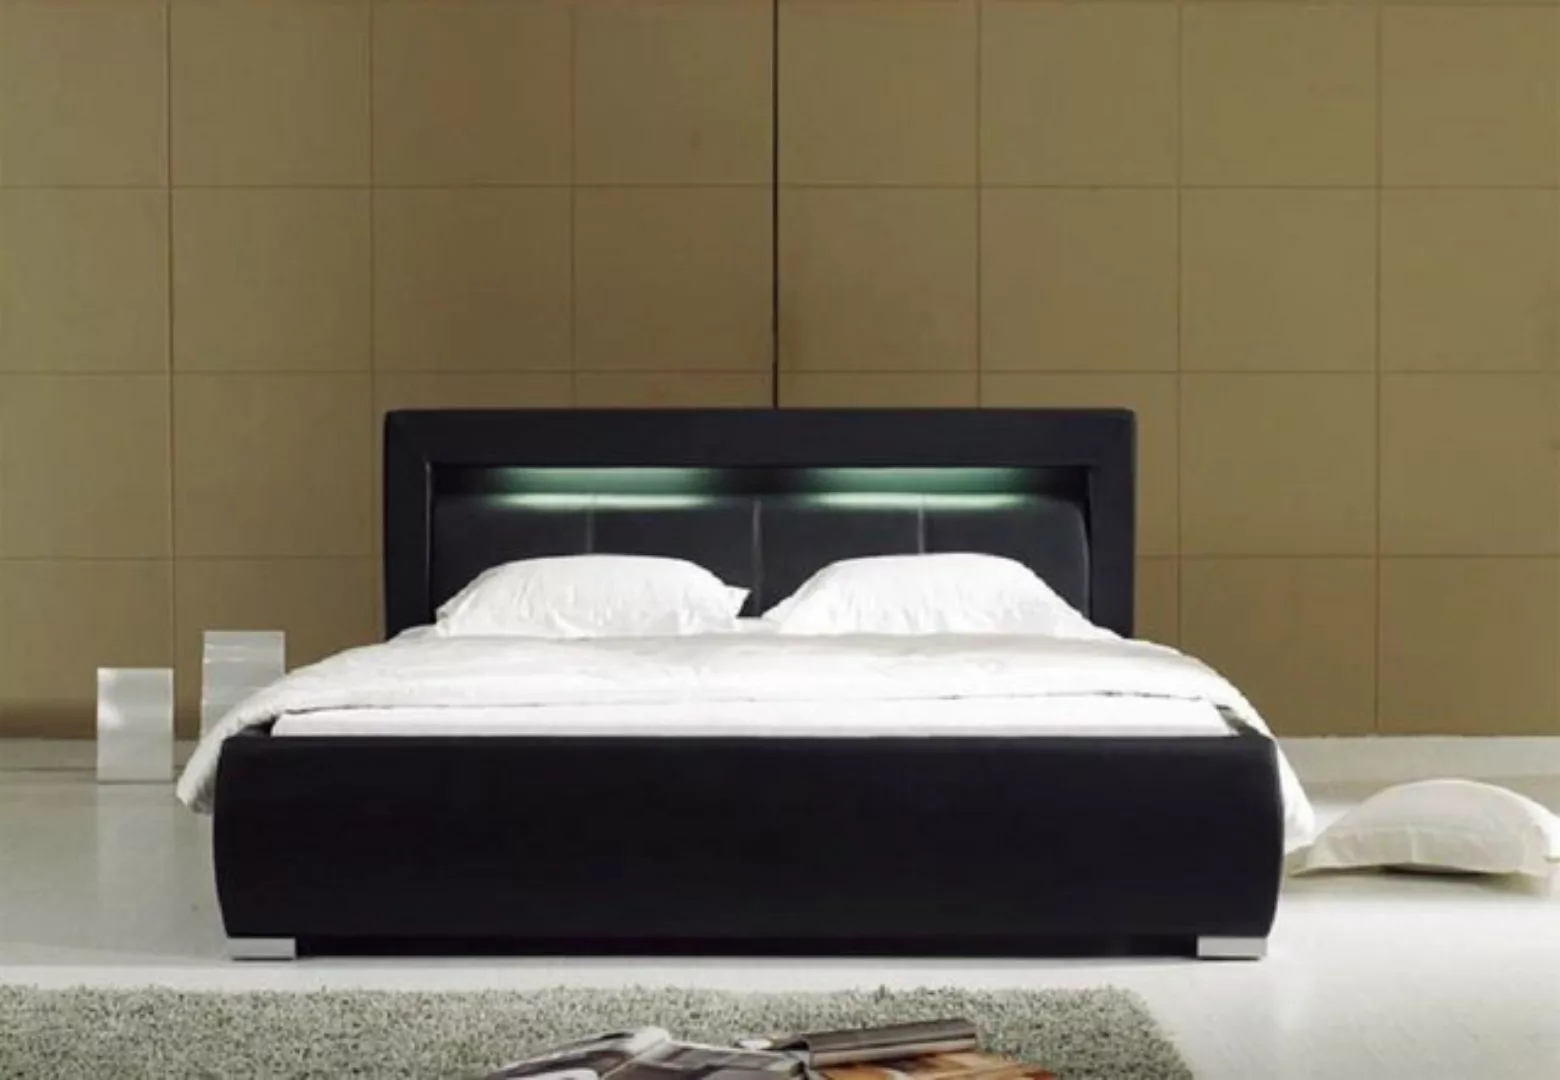 JVmoebel Bett Leder Bett Polster Design Luxus Doppel Hotel Schlaf Zimmer Eh günstig online kaufen